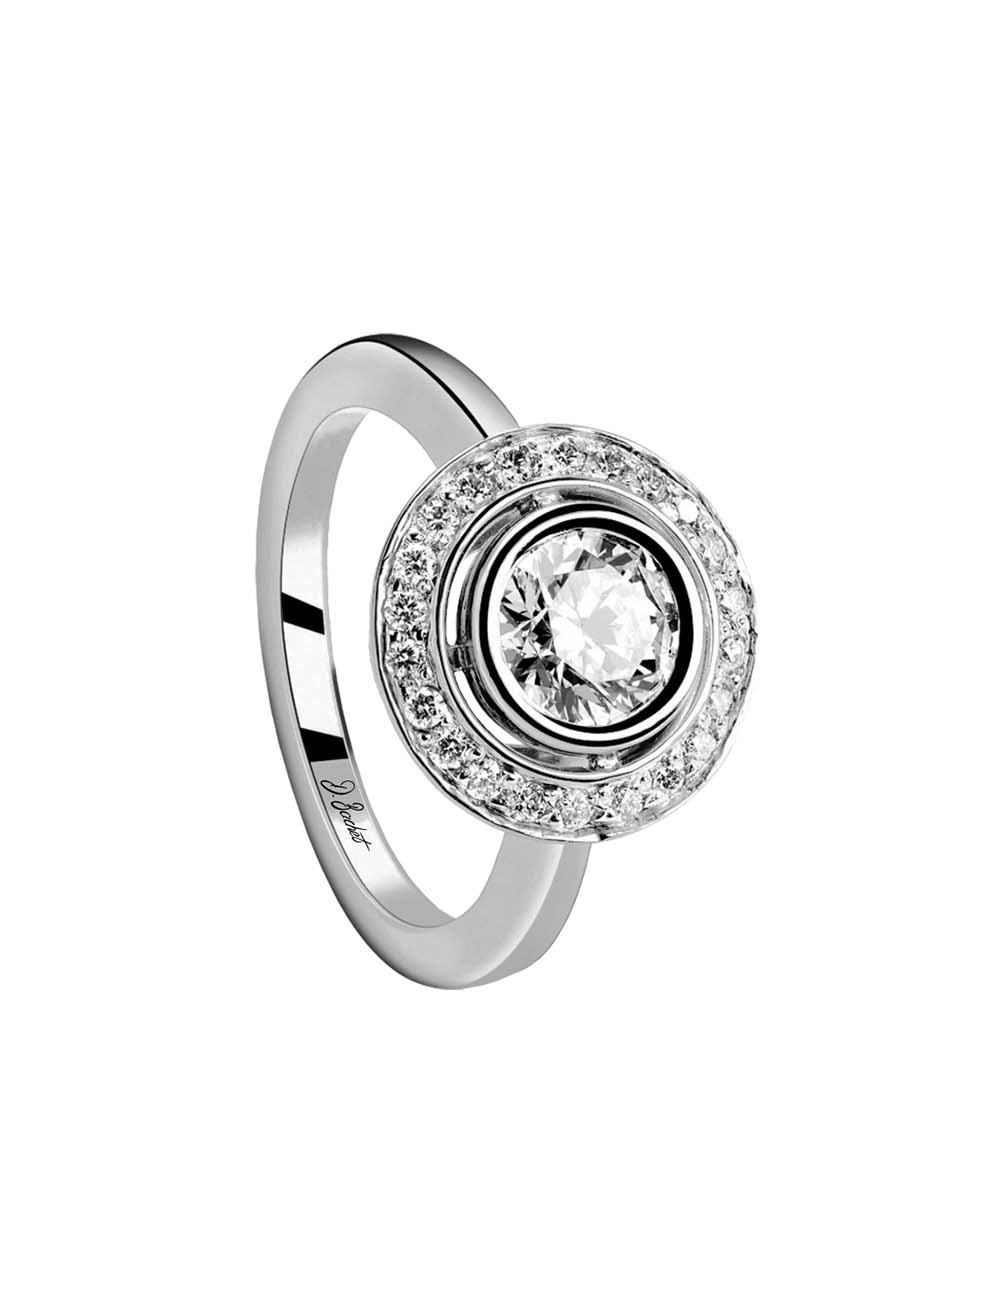 1 Carat White Diamond Engagement Ring